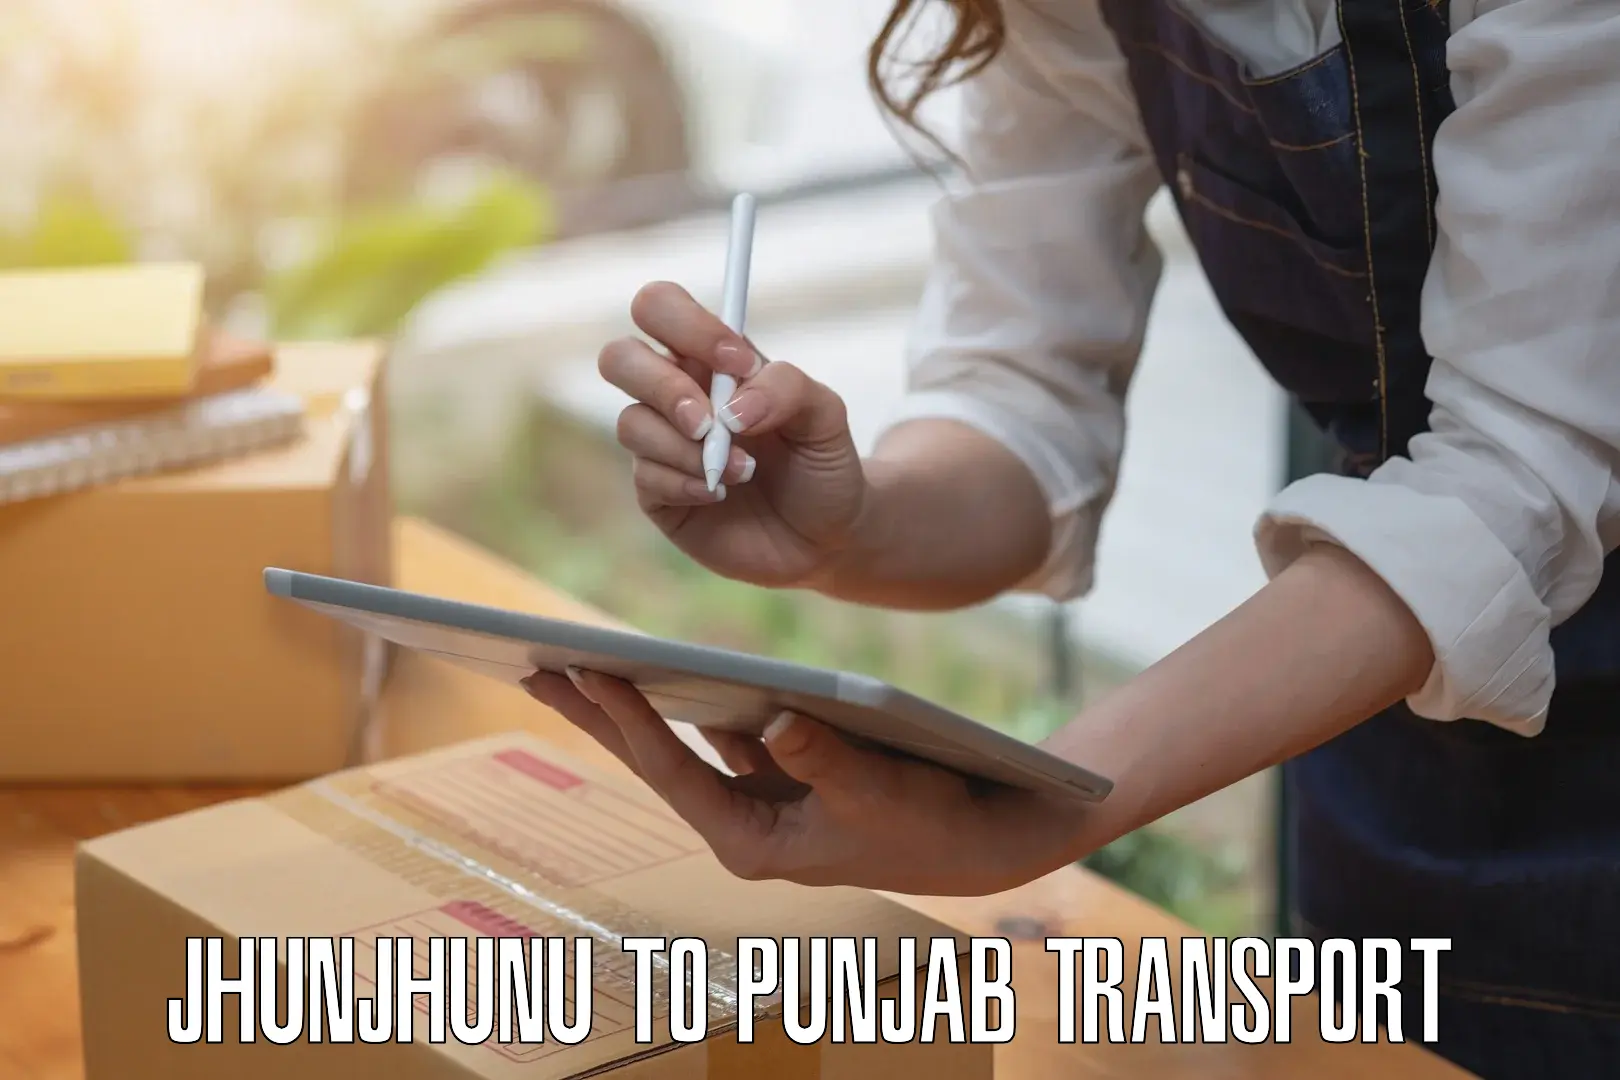 Two wheeler parcel service Jhunjhunu to Nawanshahr